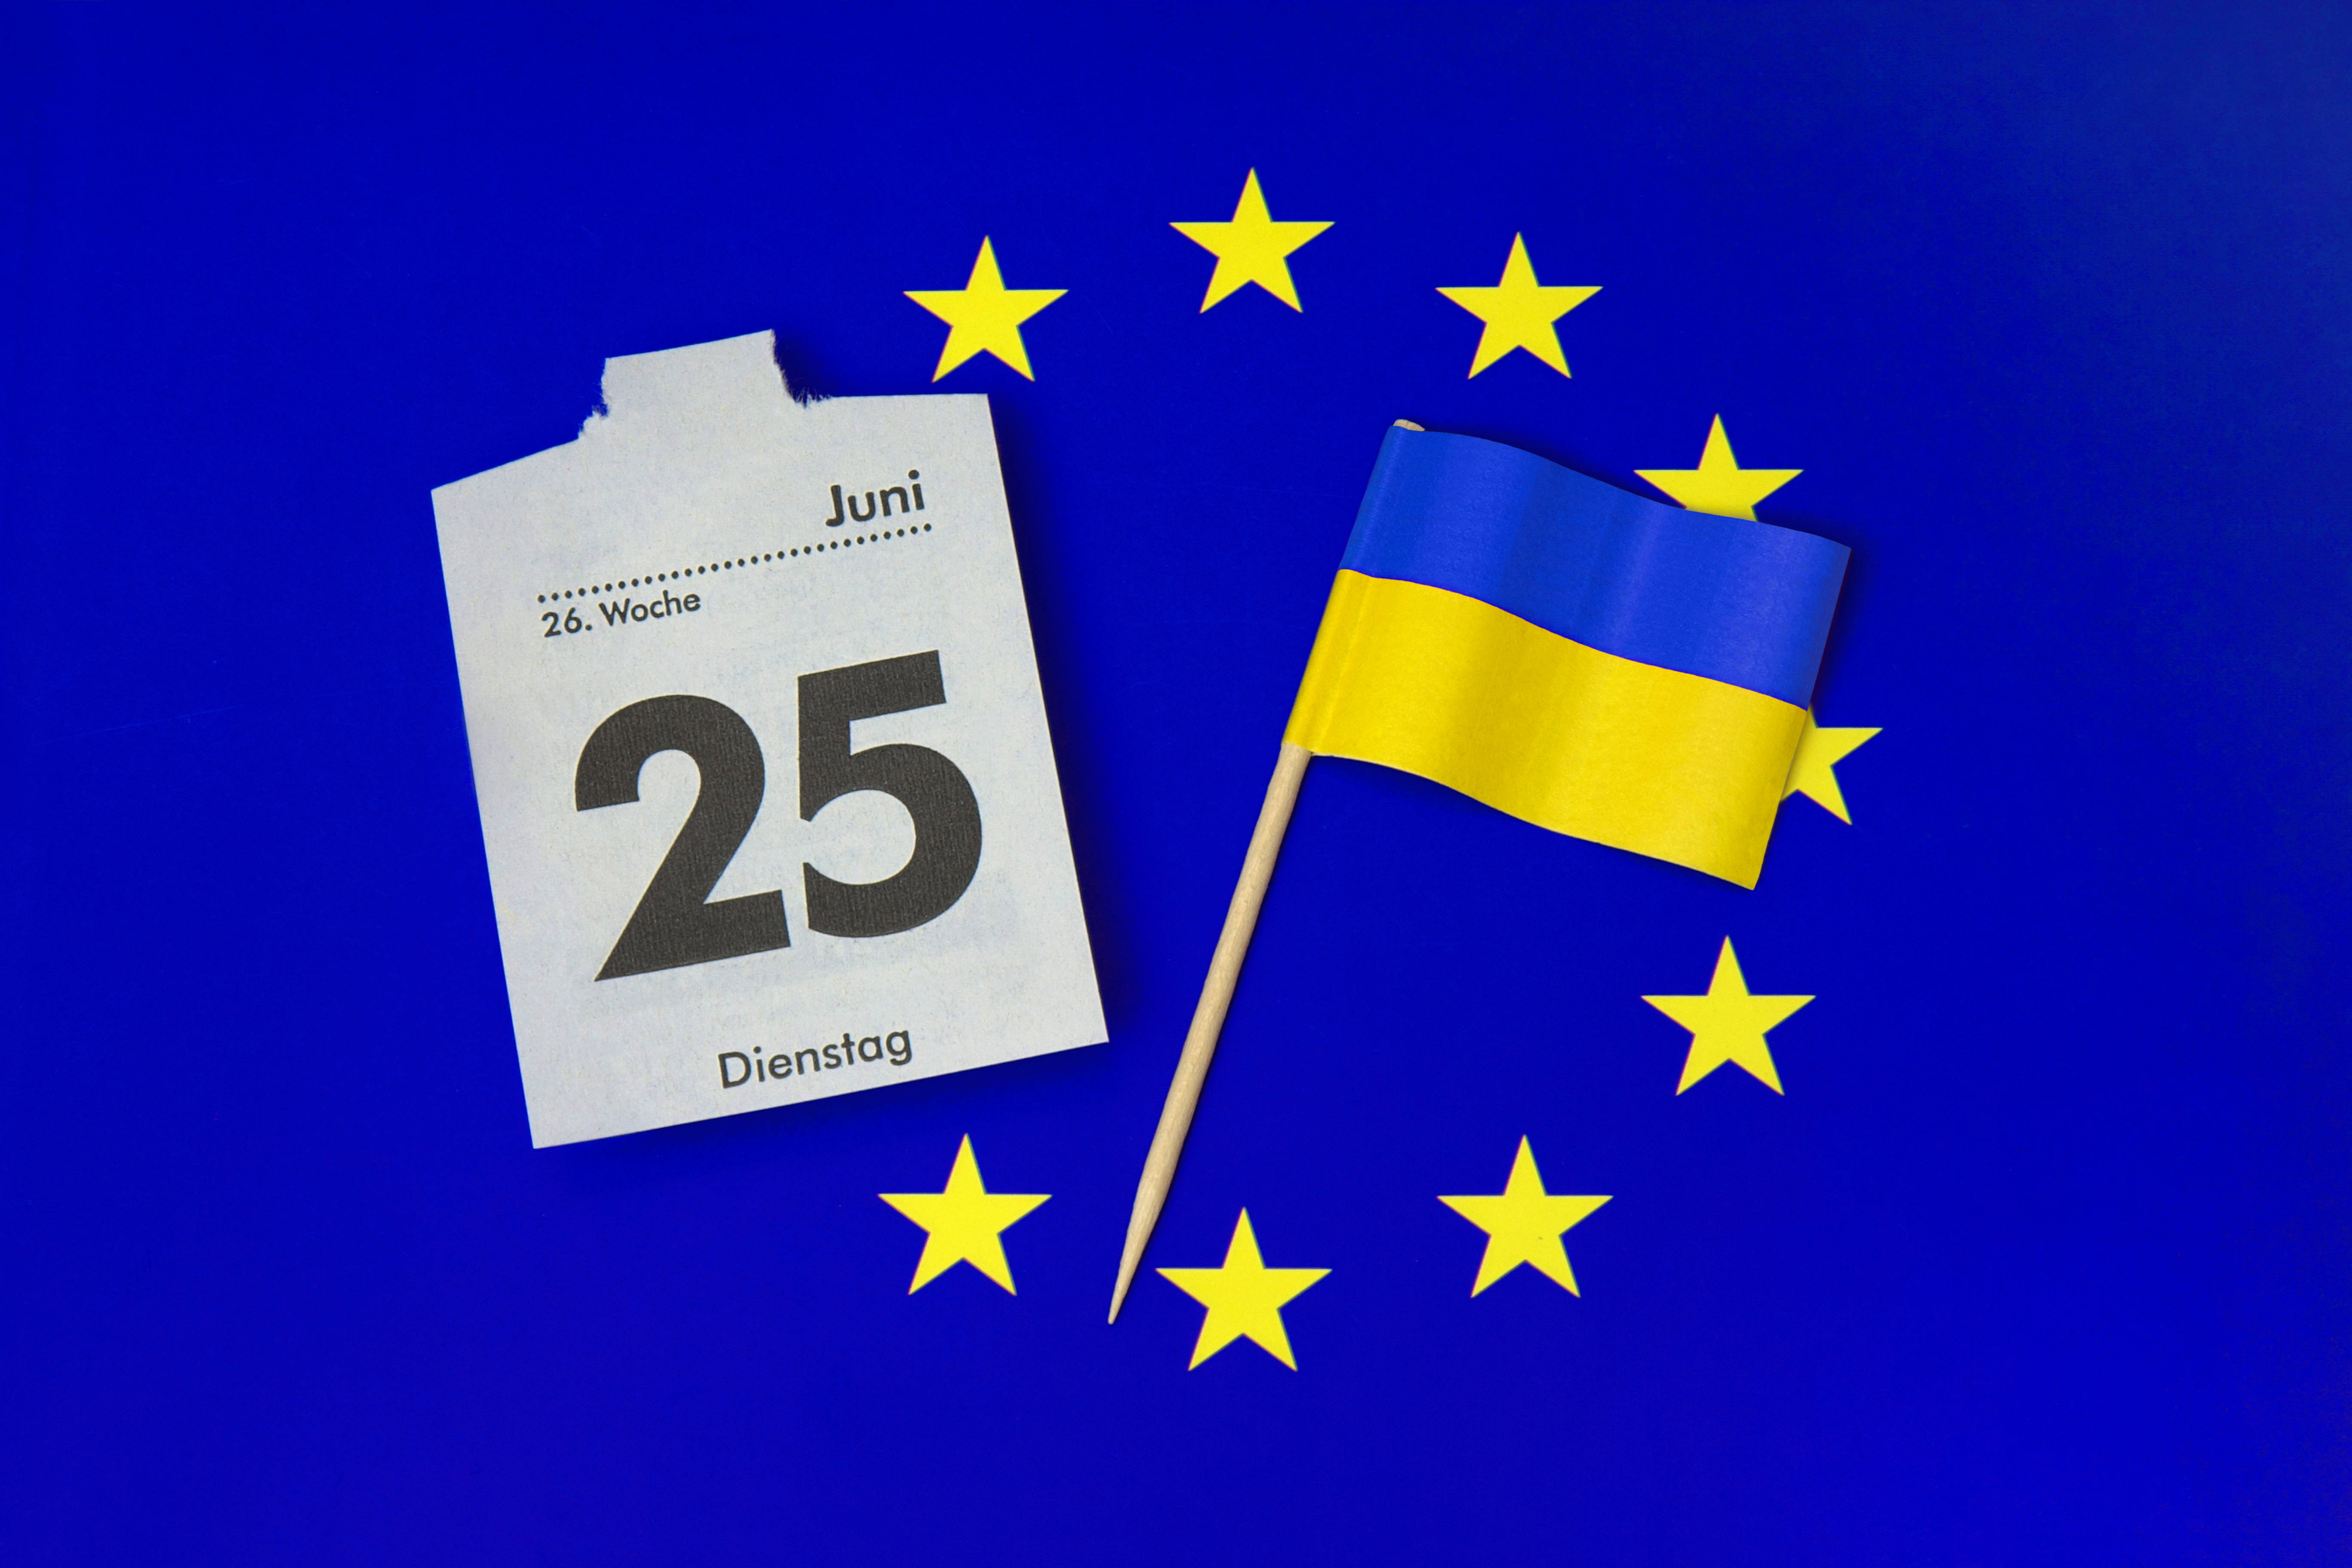 Am 25. Juni beginnen die Beitrittsgespräche der Europäischen Union mit der Ukraine. Bis zu einem EU-Beitritt müssen aber noch einige Hürden genommen werden.